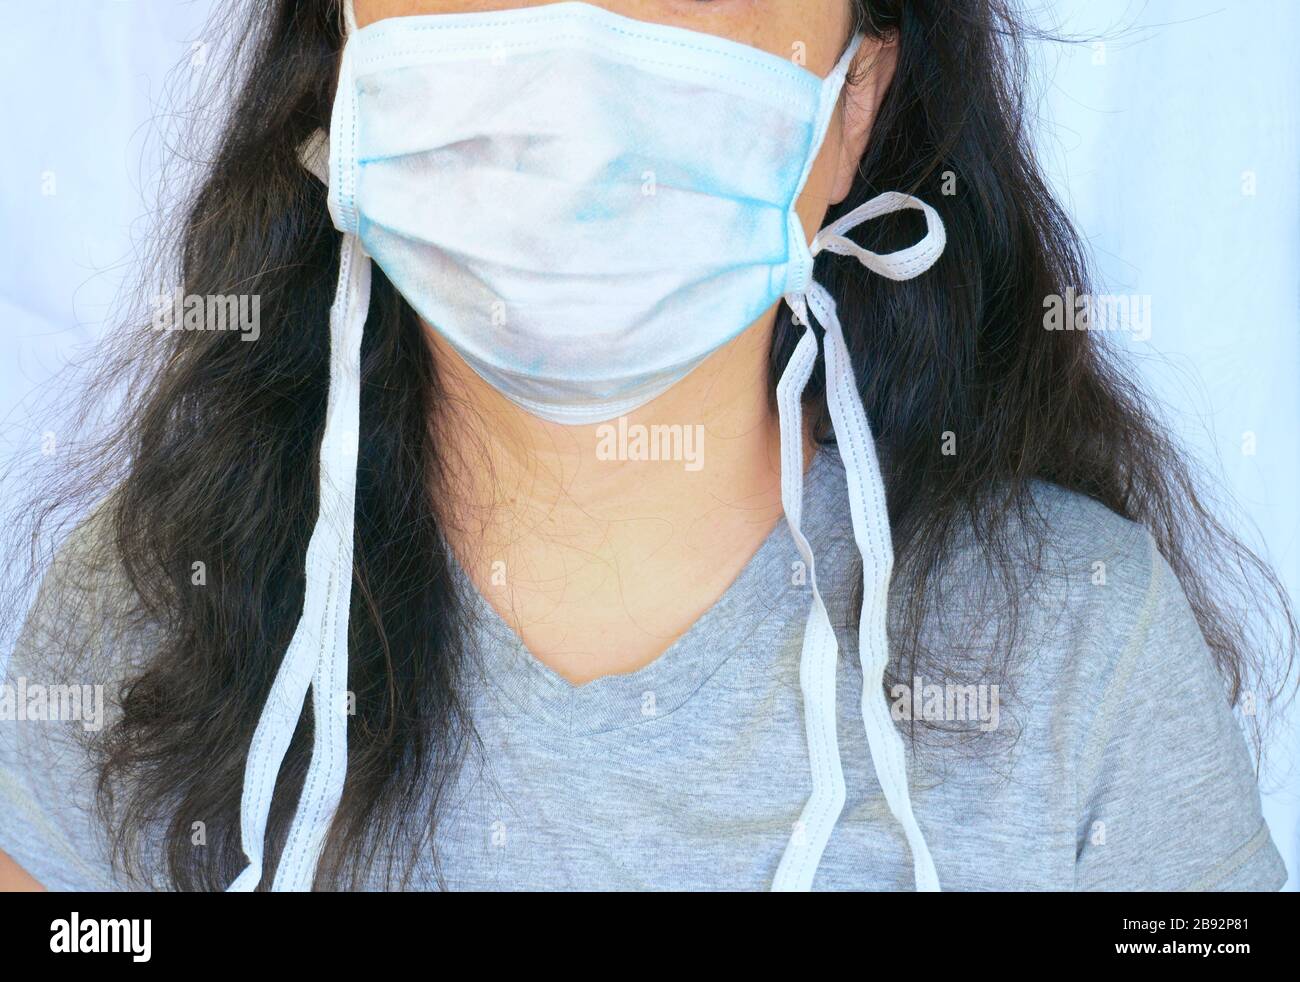 Donna che indossa la maschera normale preventiive surgicall durante il nuovo coronavirus aka Covid-19 pandemic. Candid ritratto, parziale viso e corpo e capelli lunghi. Foto Stock